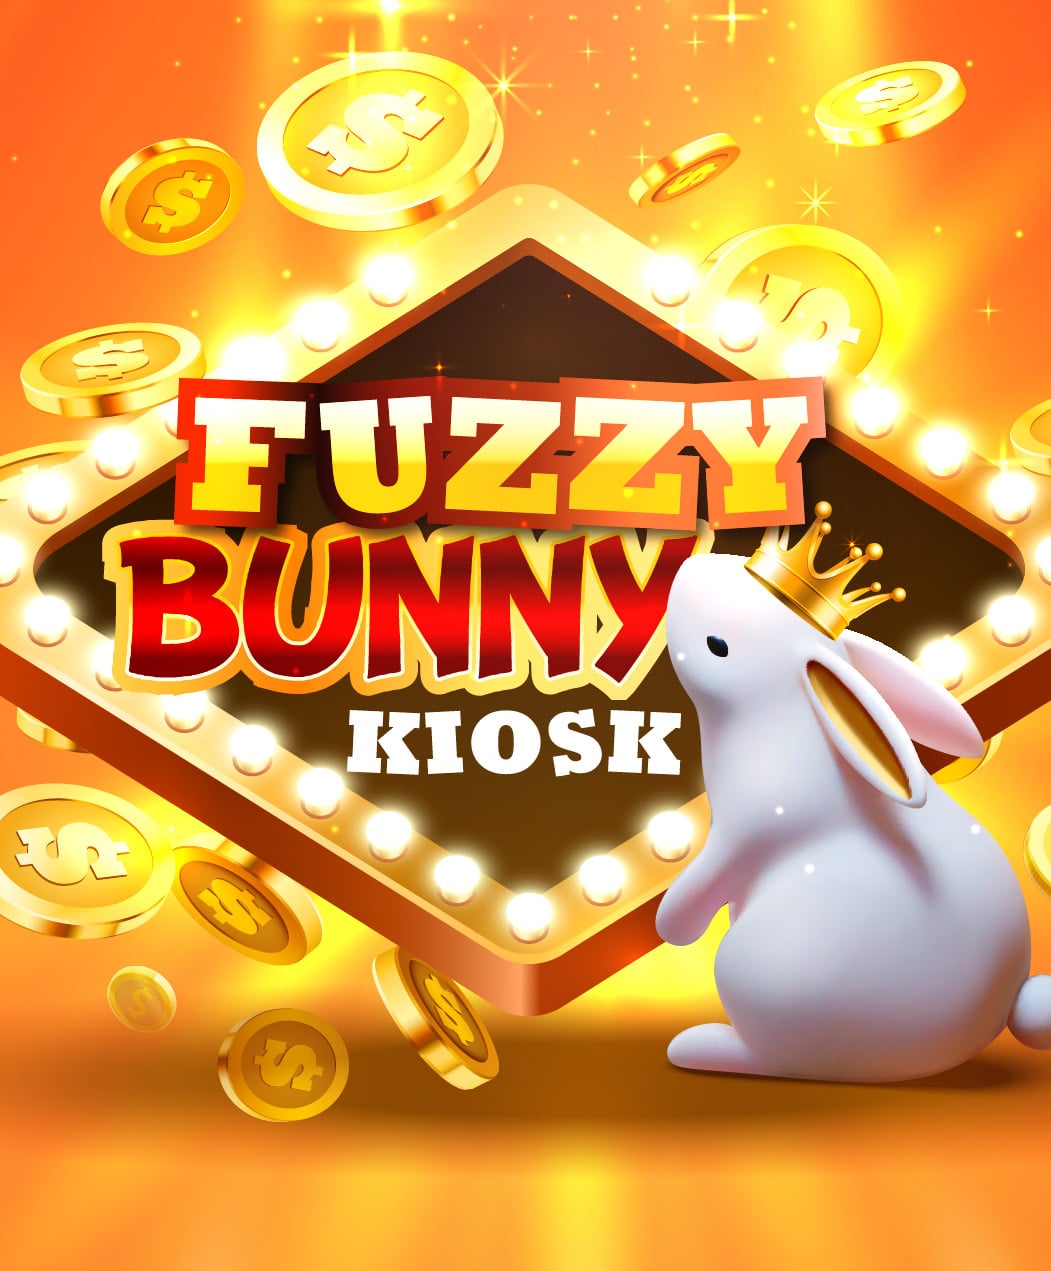 Fuzzy Bunny Kiosk